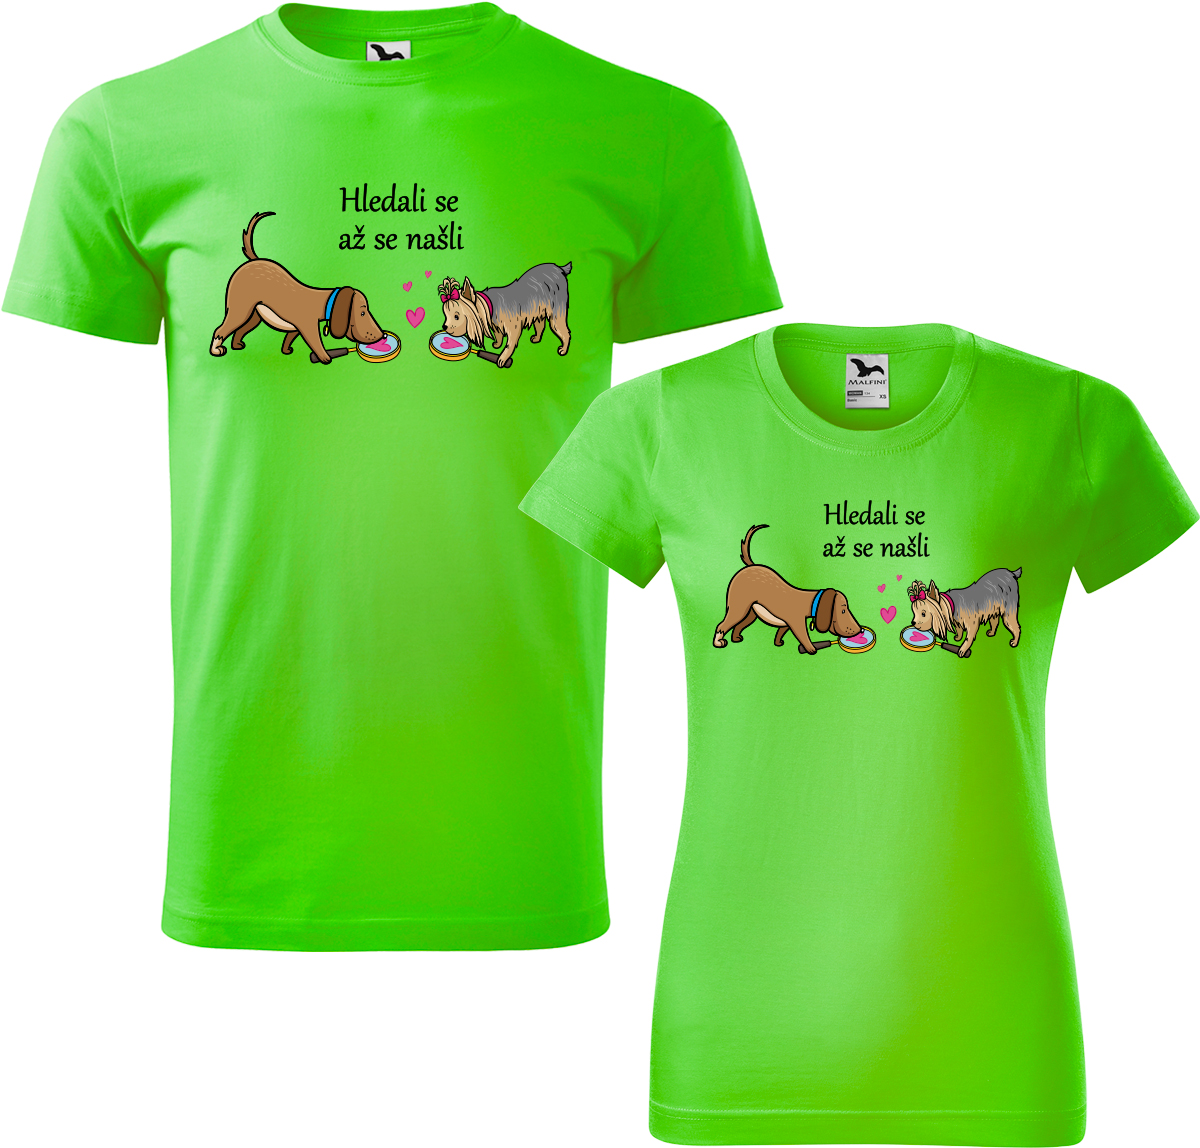 Trička pro páry - Hledali se až se našli Barva: Apple Green (92), Velikost dámské tričko: S, Velikost pánské tričko: XL